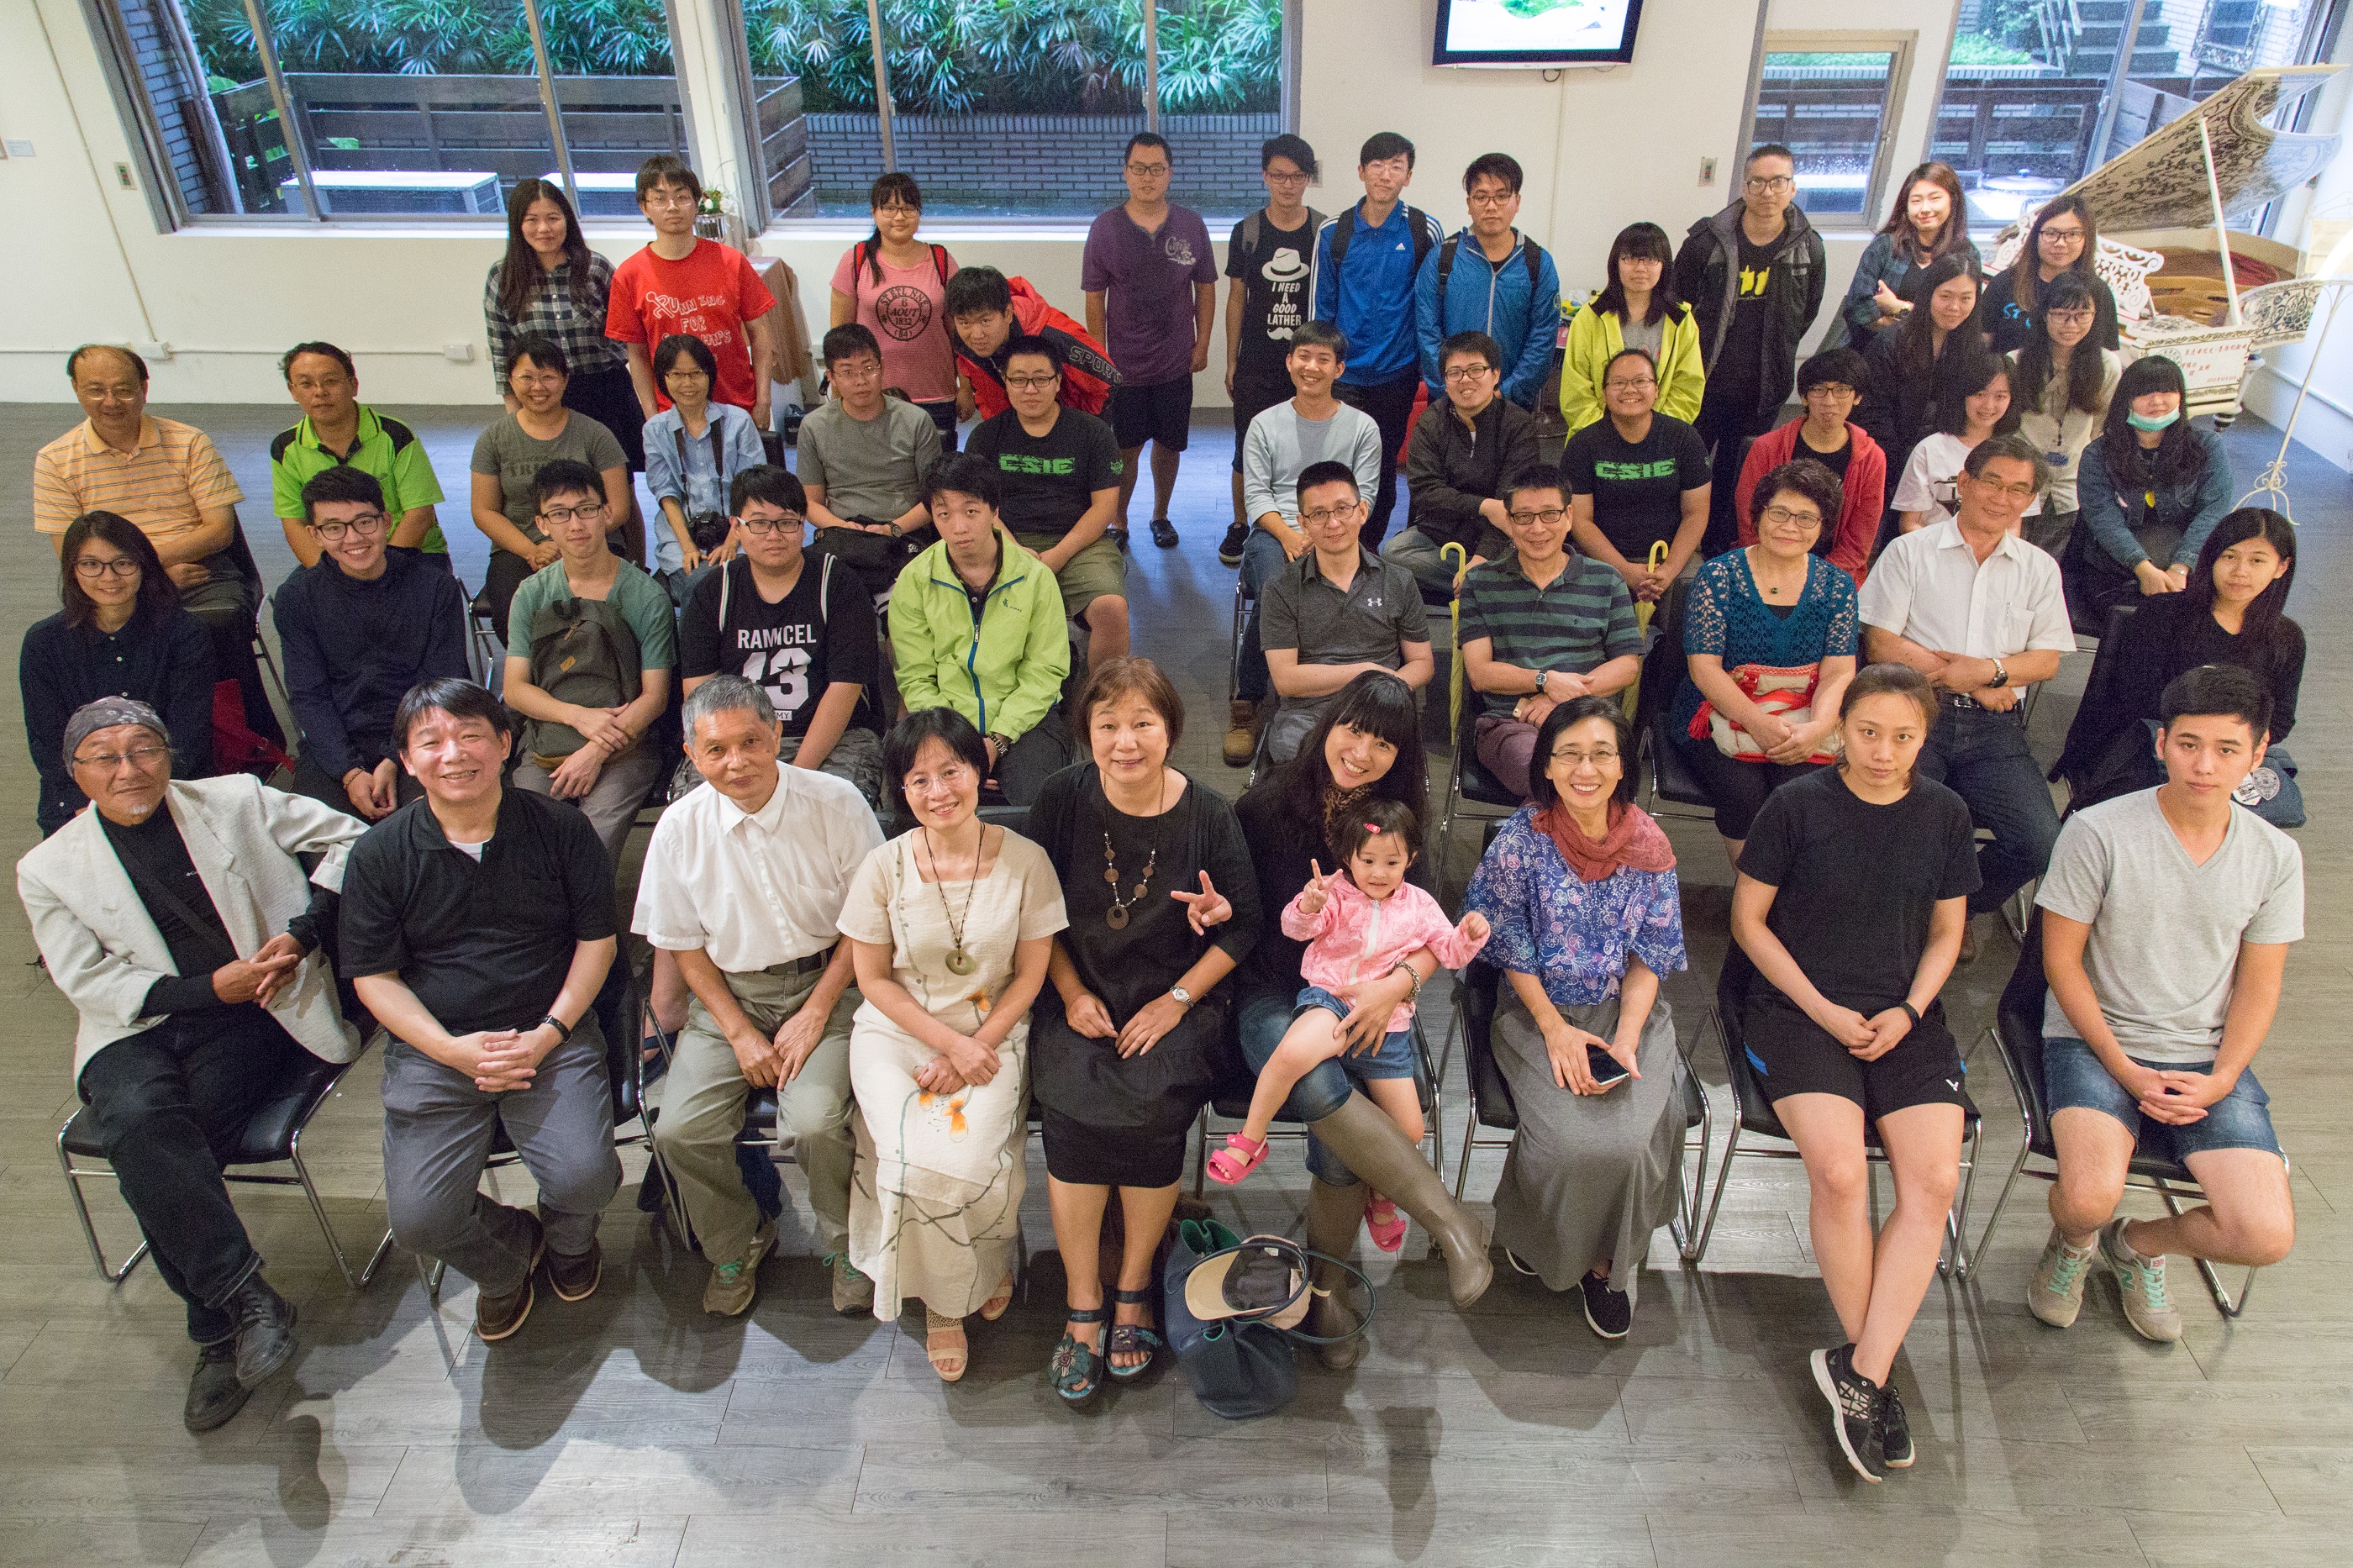 聖約翰科技大學數位藝文中心舉辦「印遊記—臺日港韓版畫展」吸引許多同學前來參觀